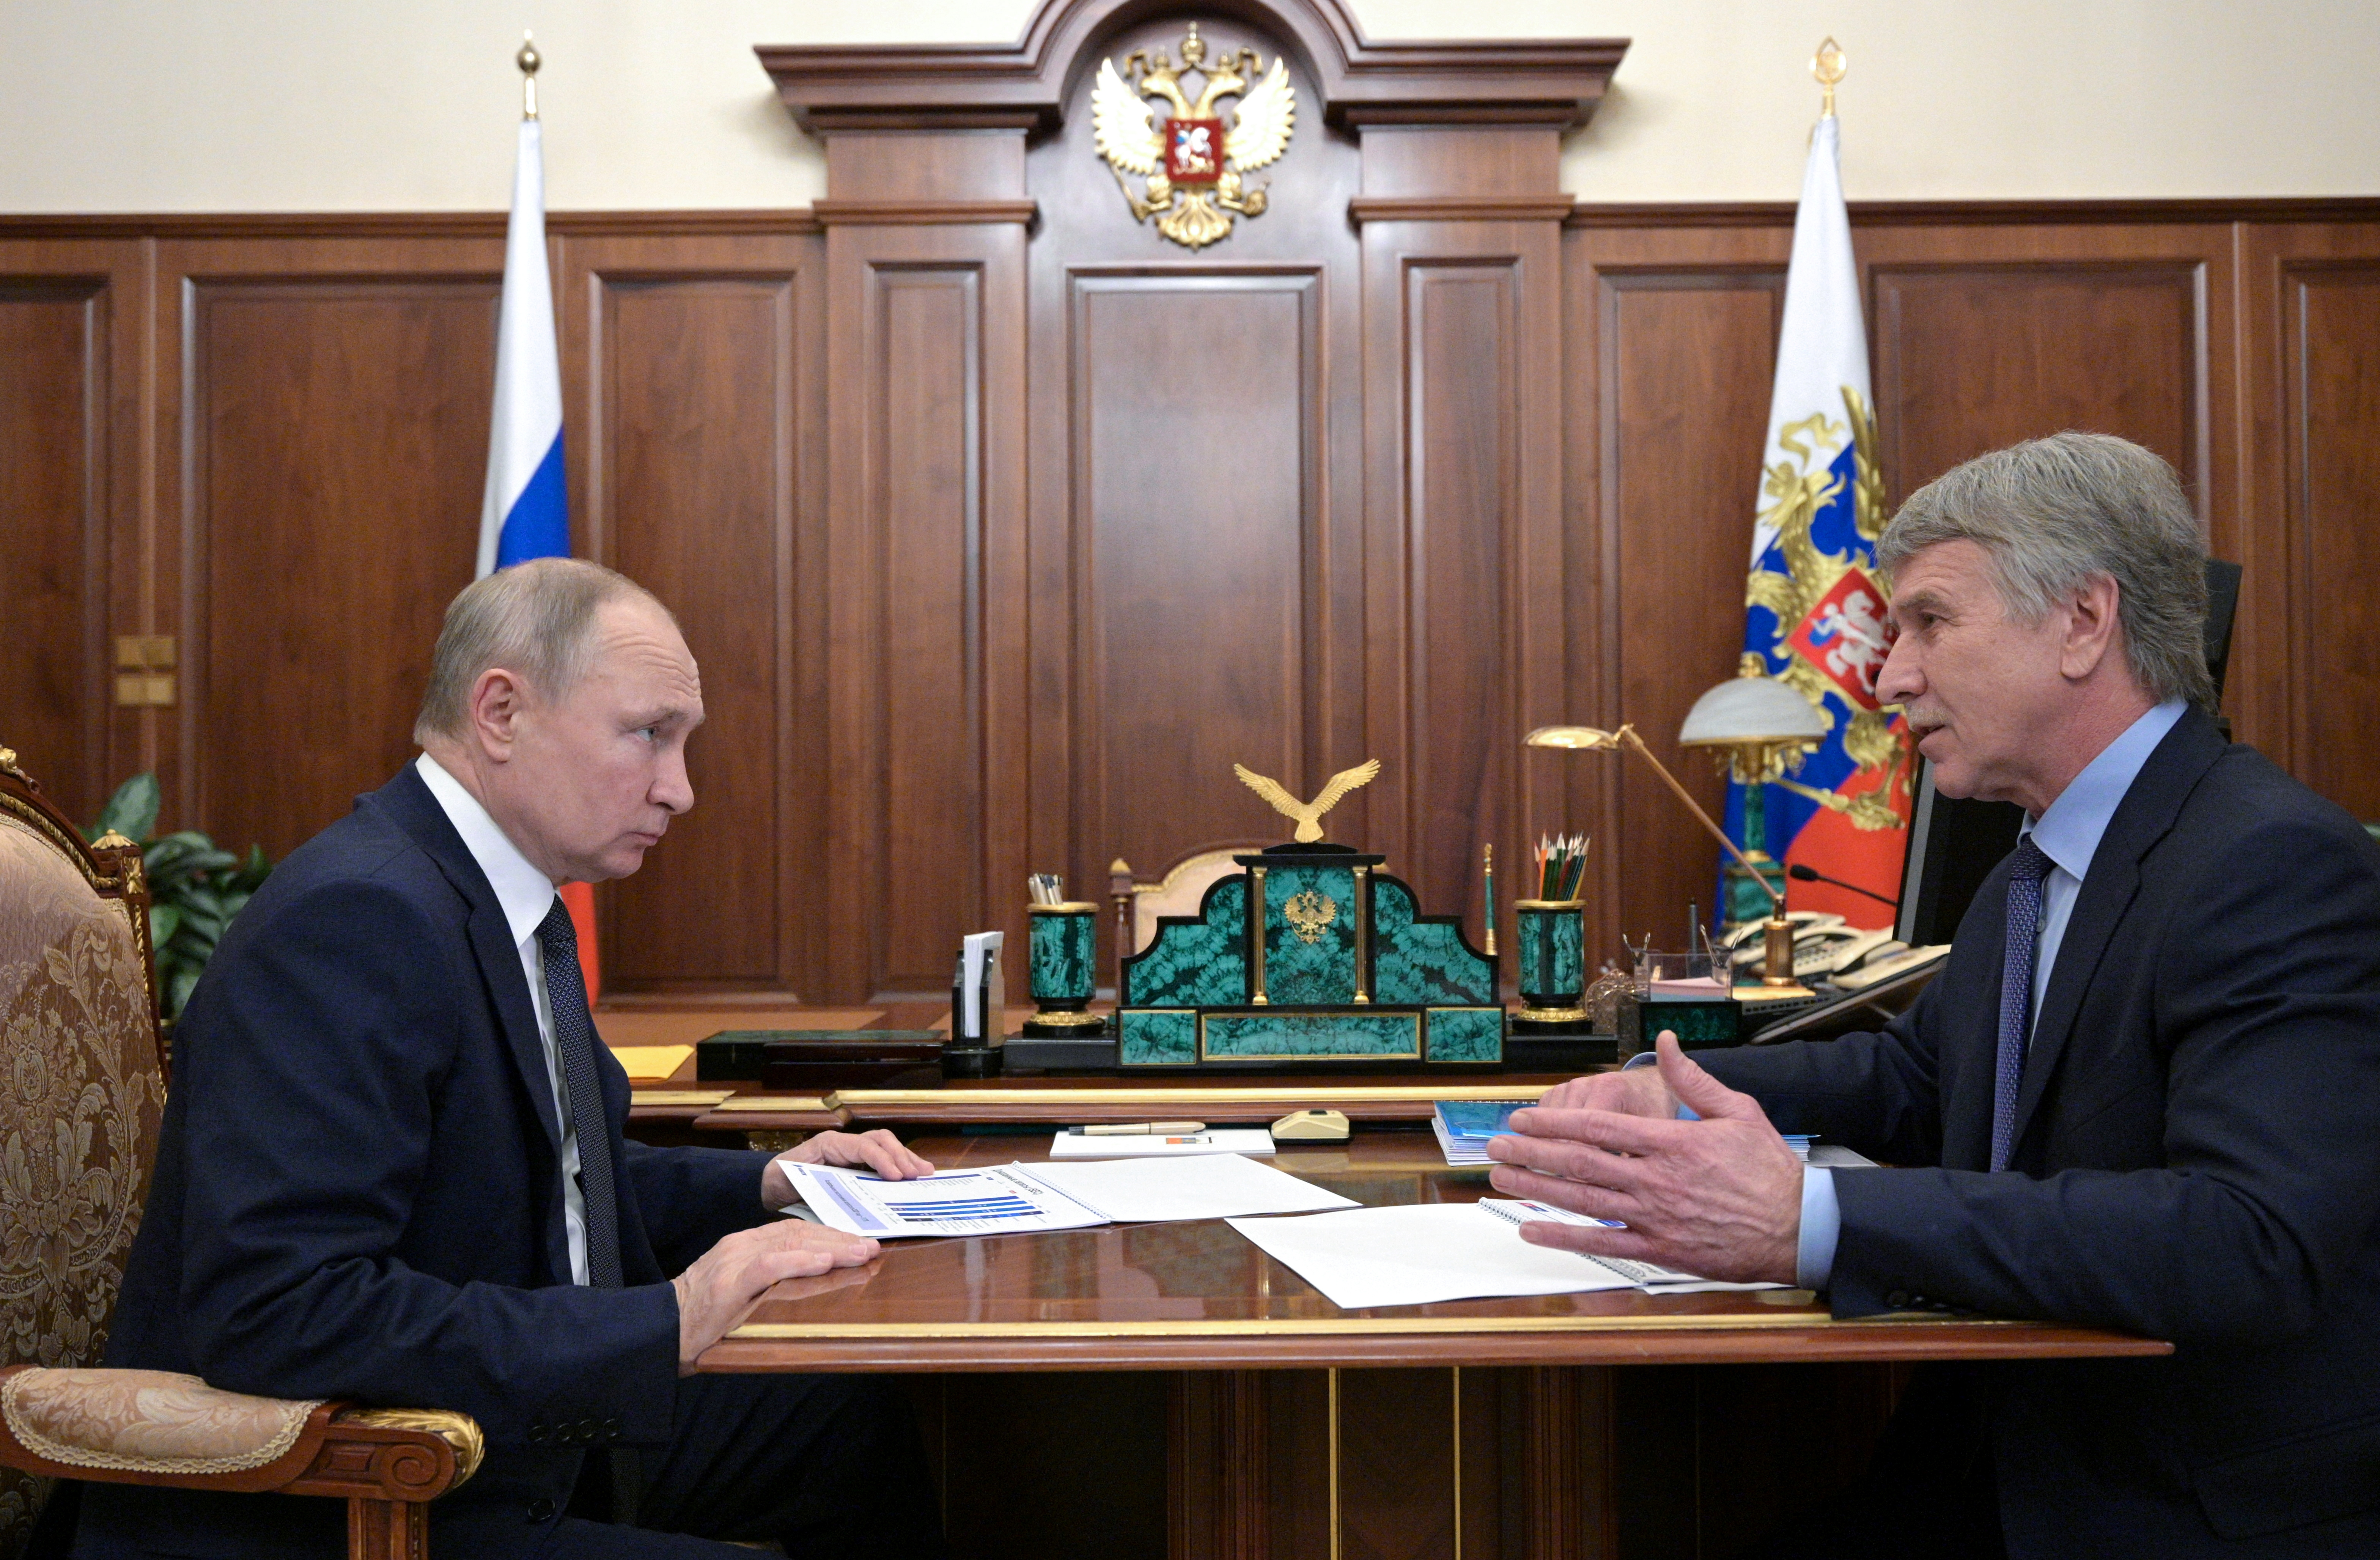 El presidente Vladimir Putin junto a Leonid Mikhelson (Sputnik/Alexei Druzhinin)